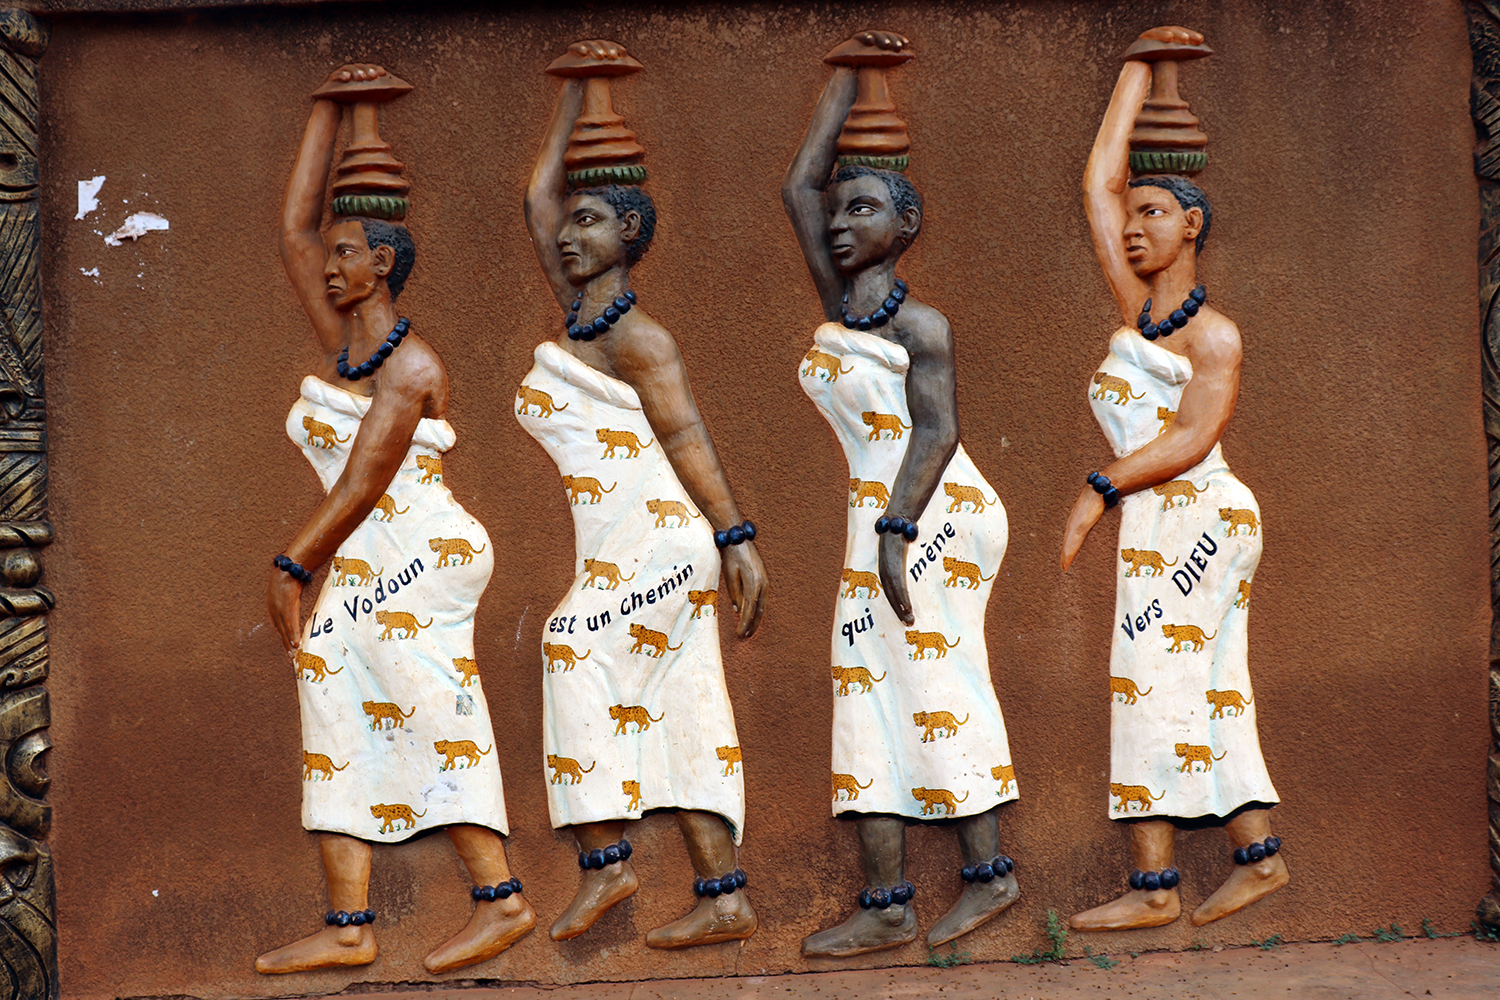 Des femmes âgées ou des filles transportent l’eau purificatrice de l’endroit où se fera la cérémonie vaudou. Le message inscrit sur leurs vêtements explique que le vaudou est un dieu unique. 